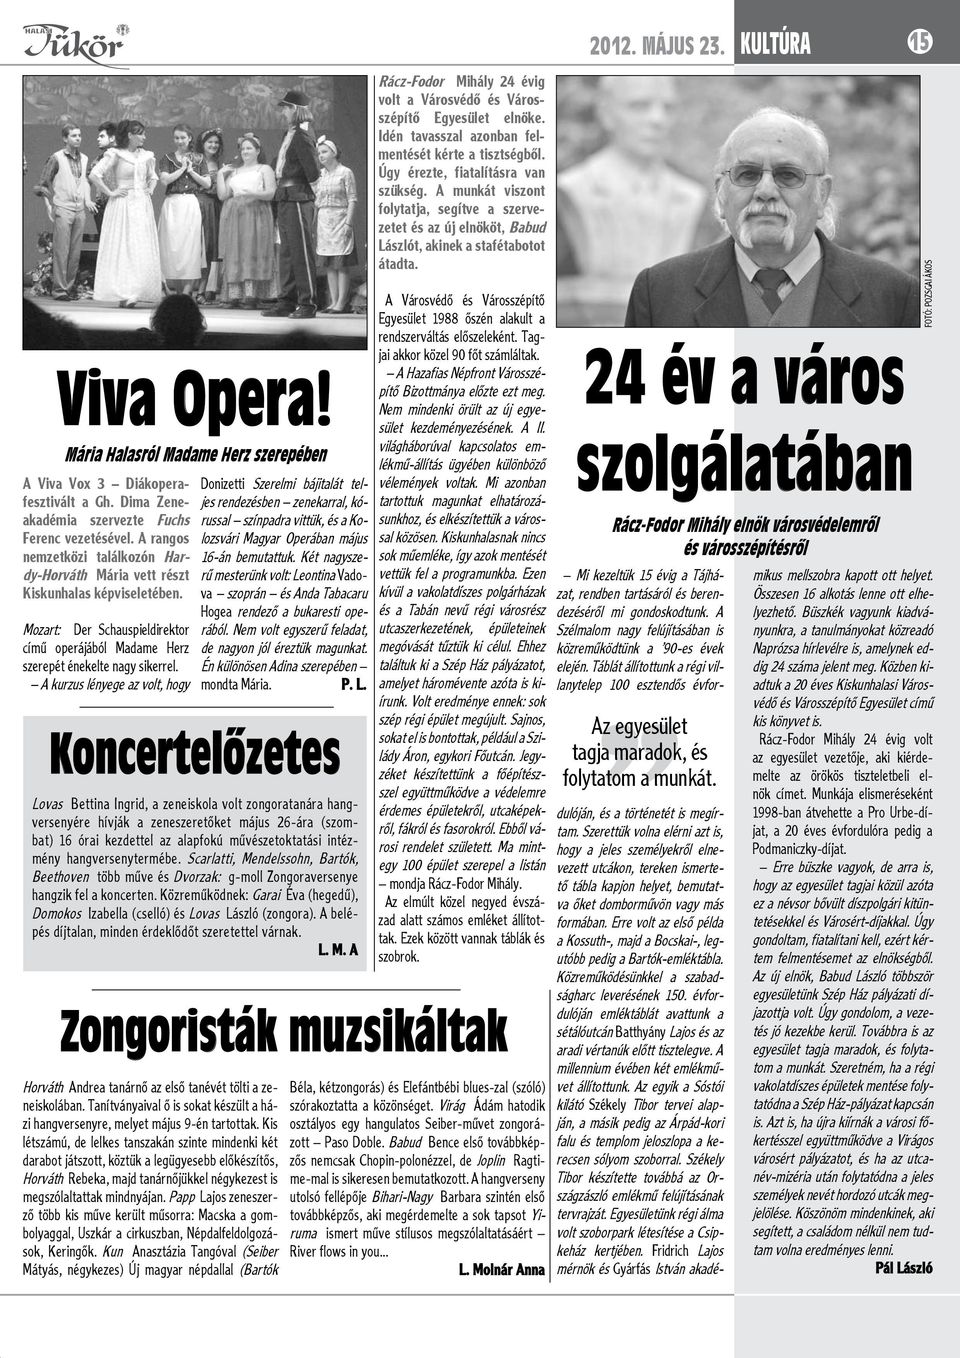 A kurzus lényege az volt, hogy Donizetti Szerelmi bájitalát teljes rendezésben zenekarral, kórussal színpadra vittük, és a Kolozsvári Magyar Operában május 16-án bemutattuk.